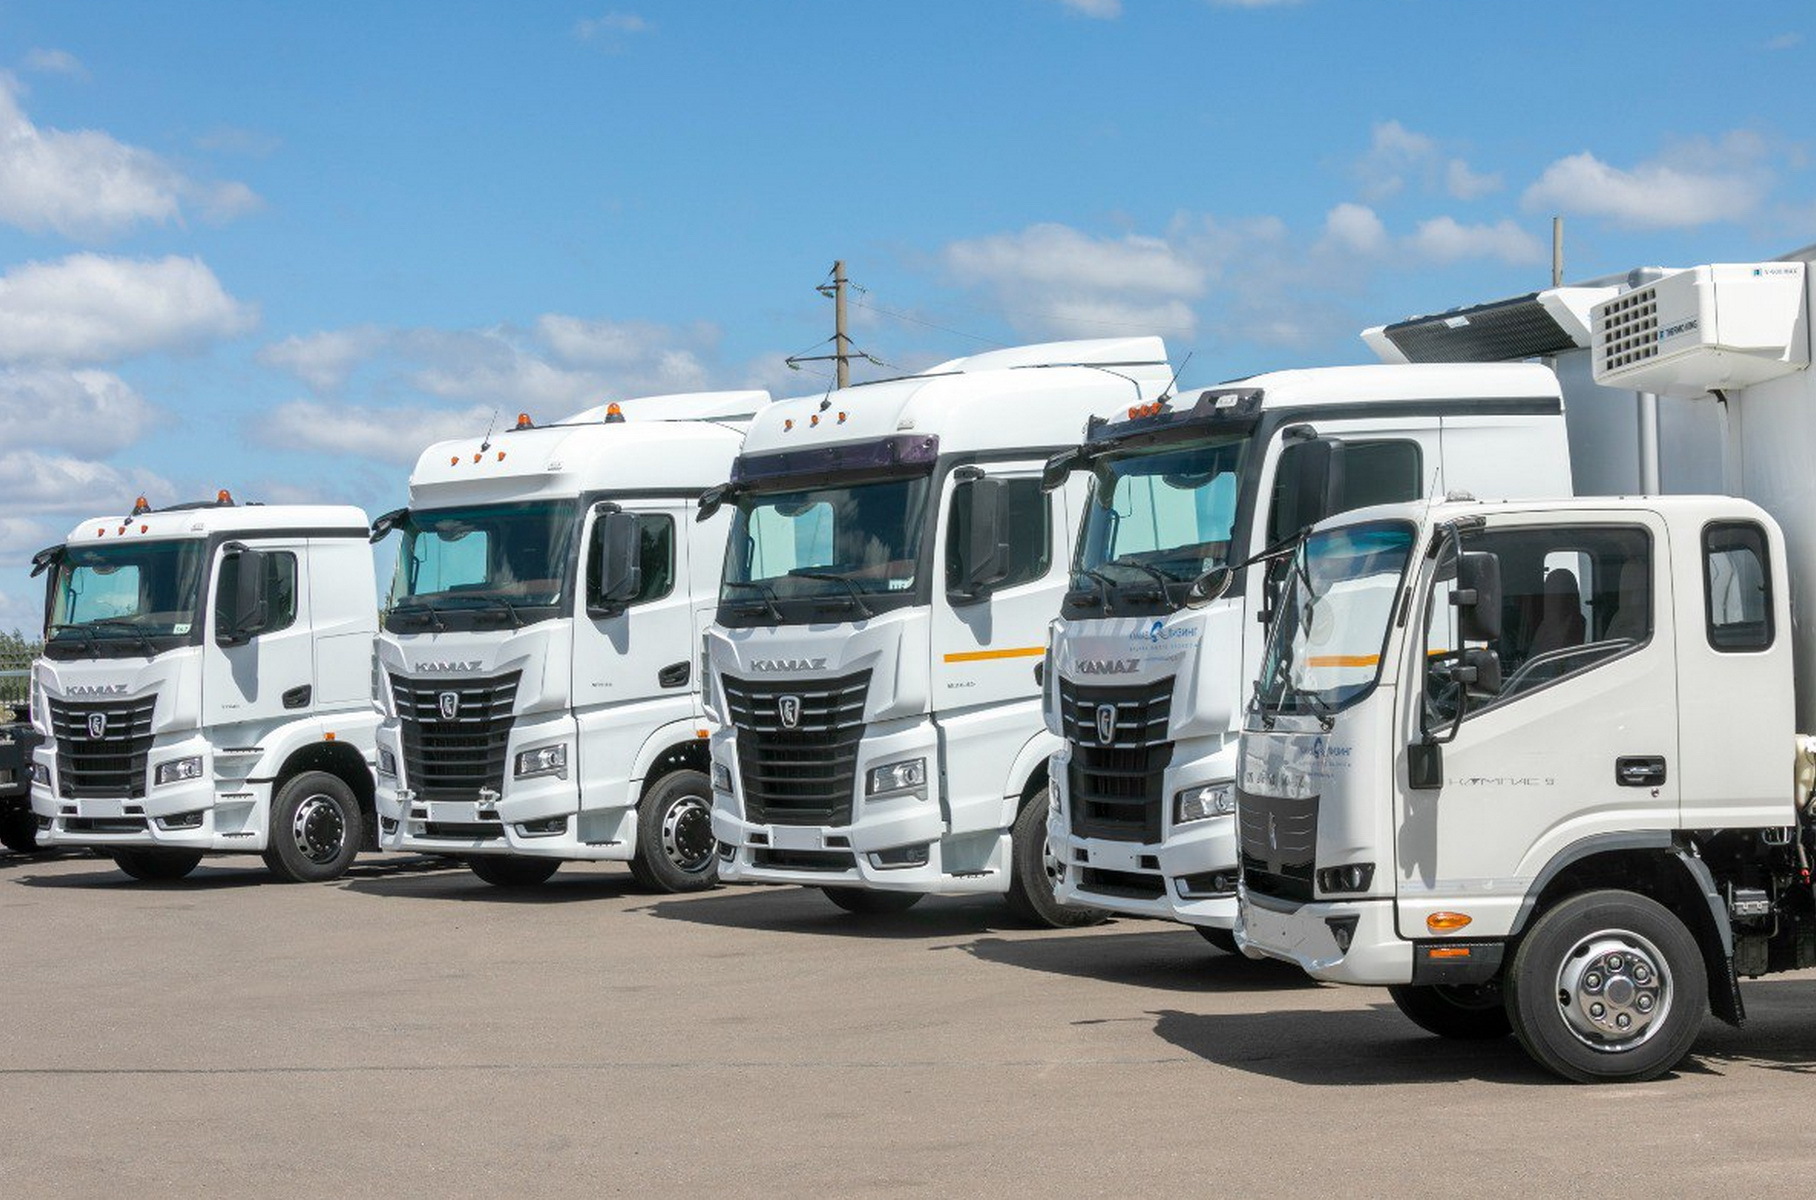 KamAZ showed a full line of “anti-sanctions” K5 trucks